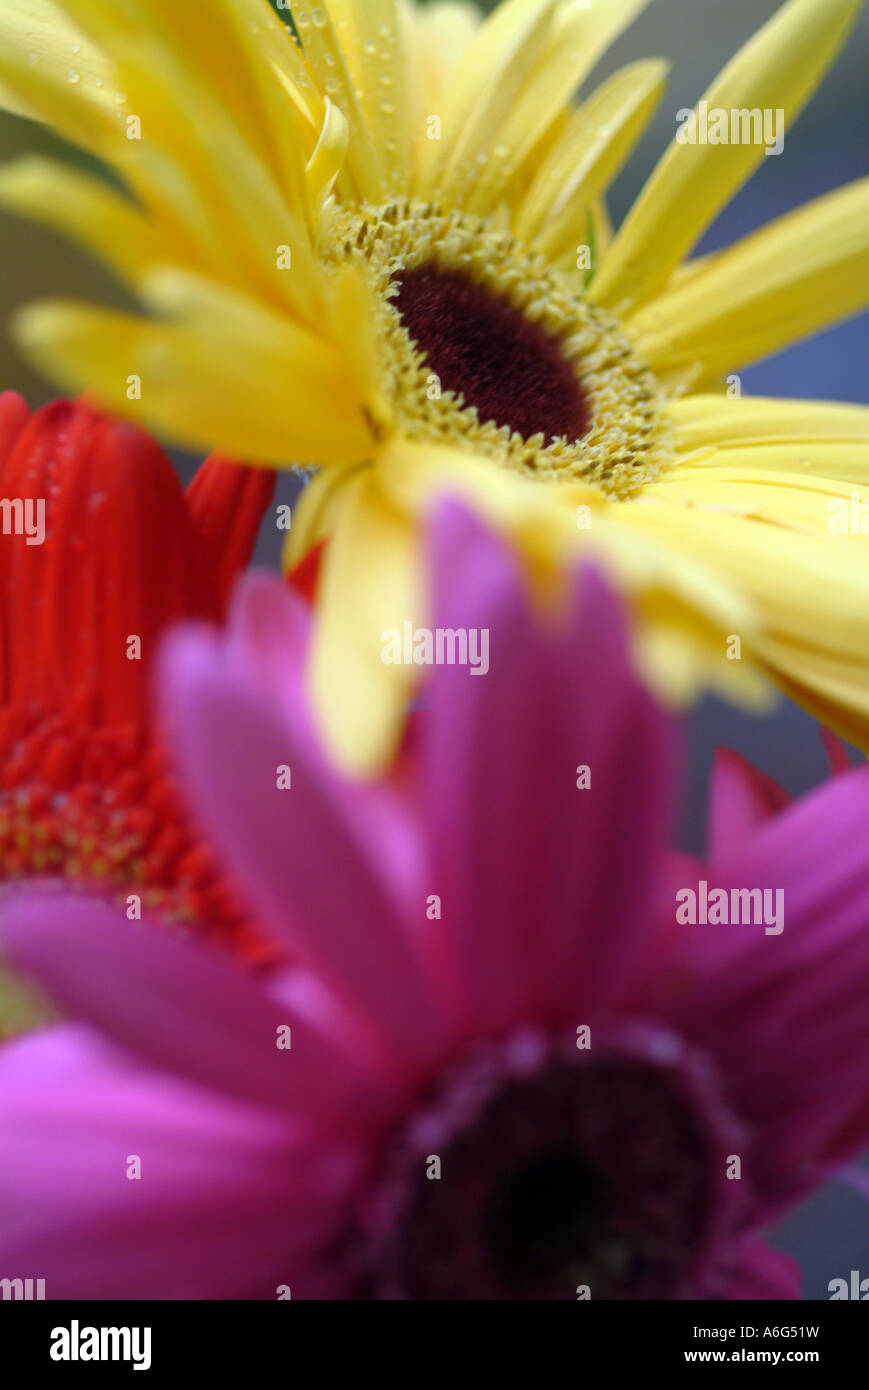 Jaune, Bleu et rouge gerber daisies, Close up de fleurs coupées Banque D'Images